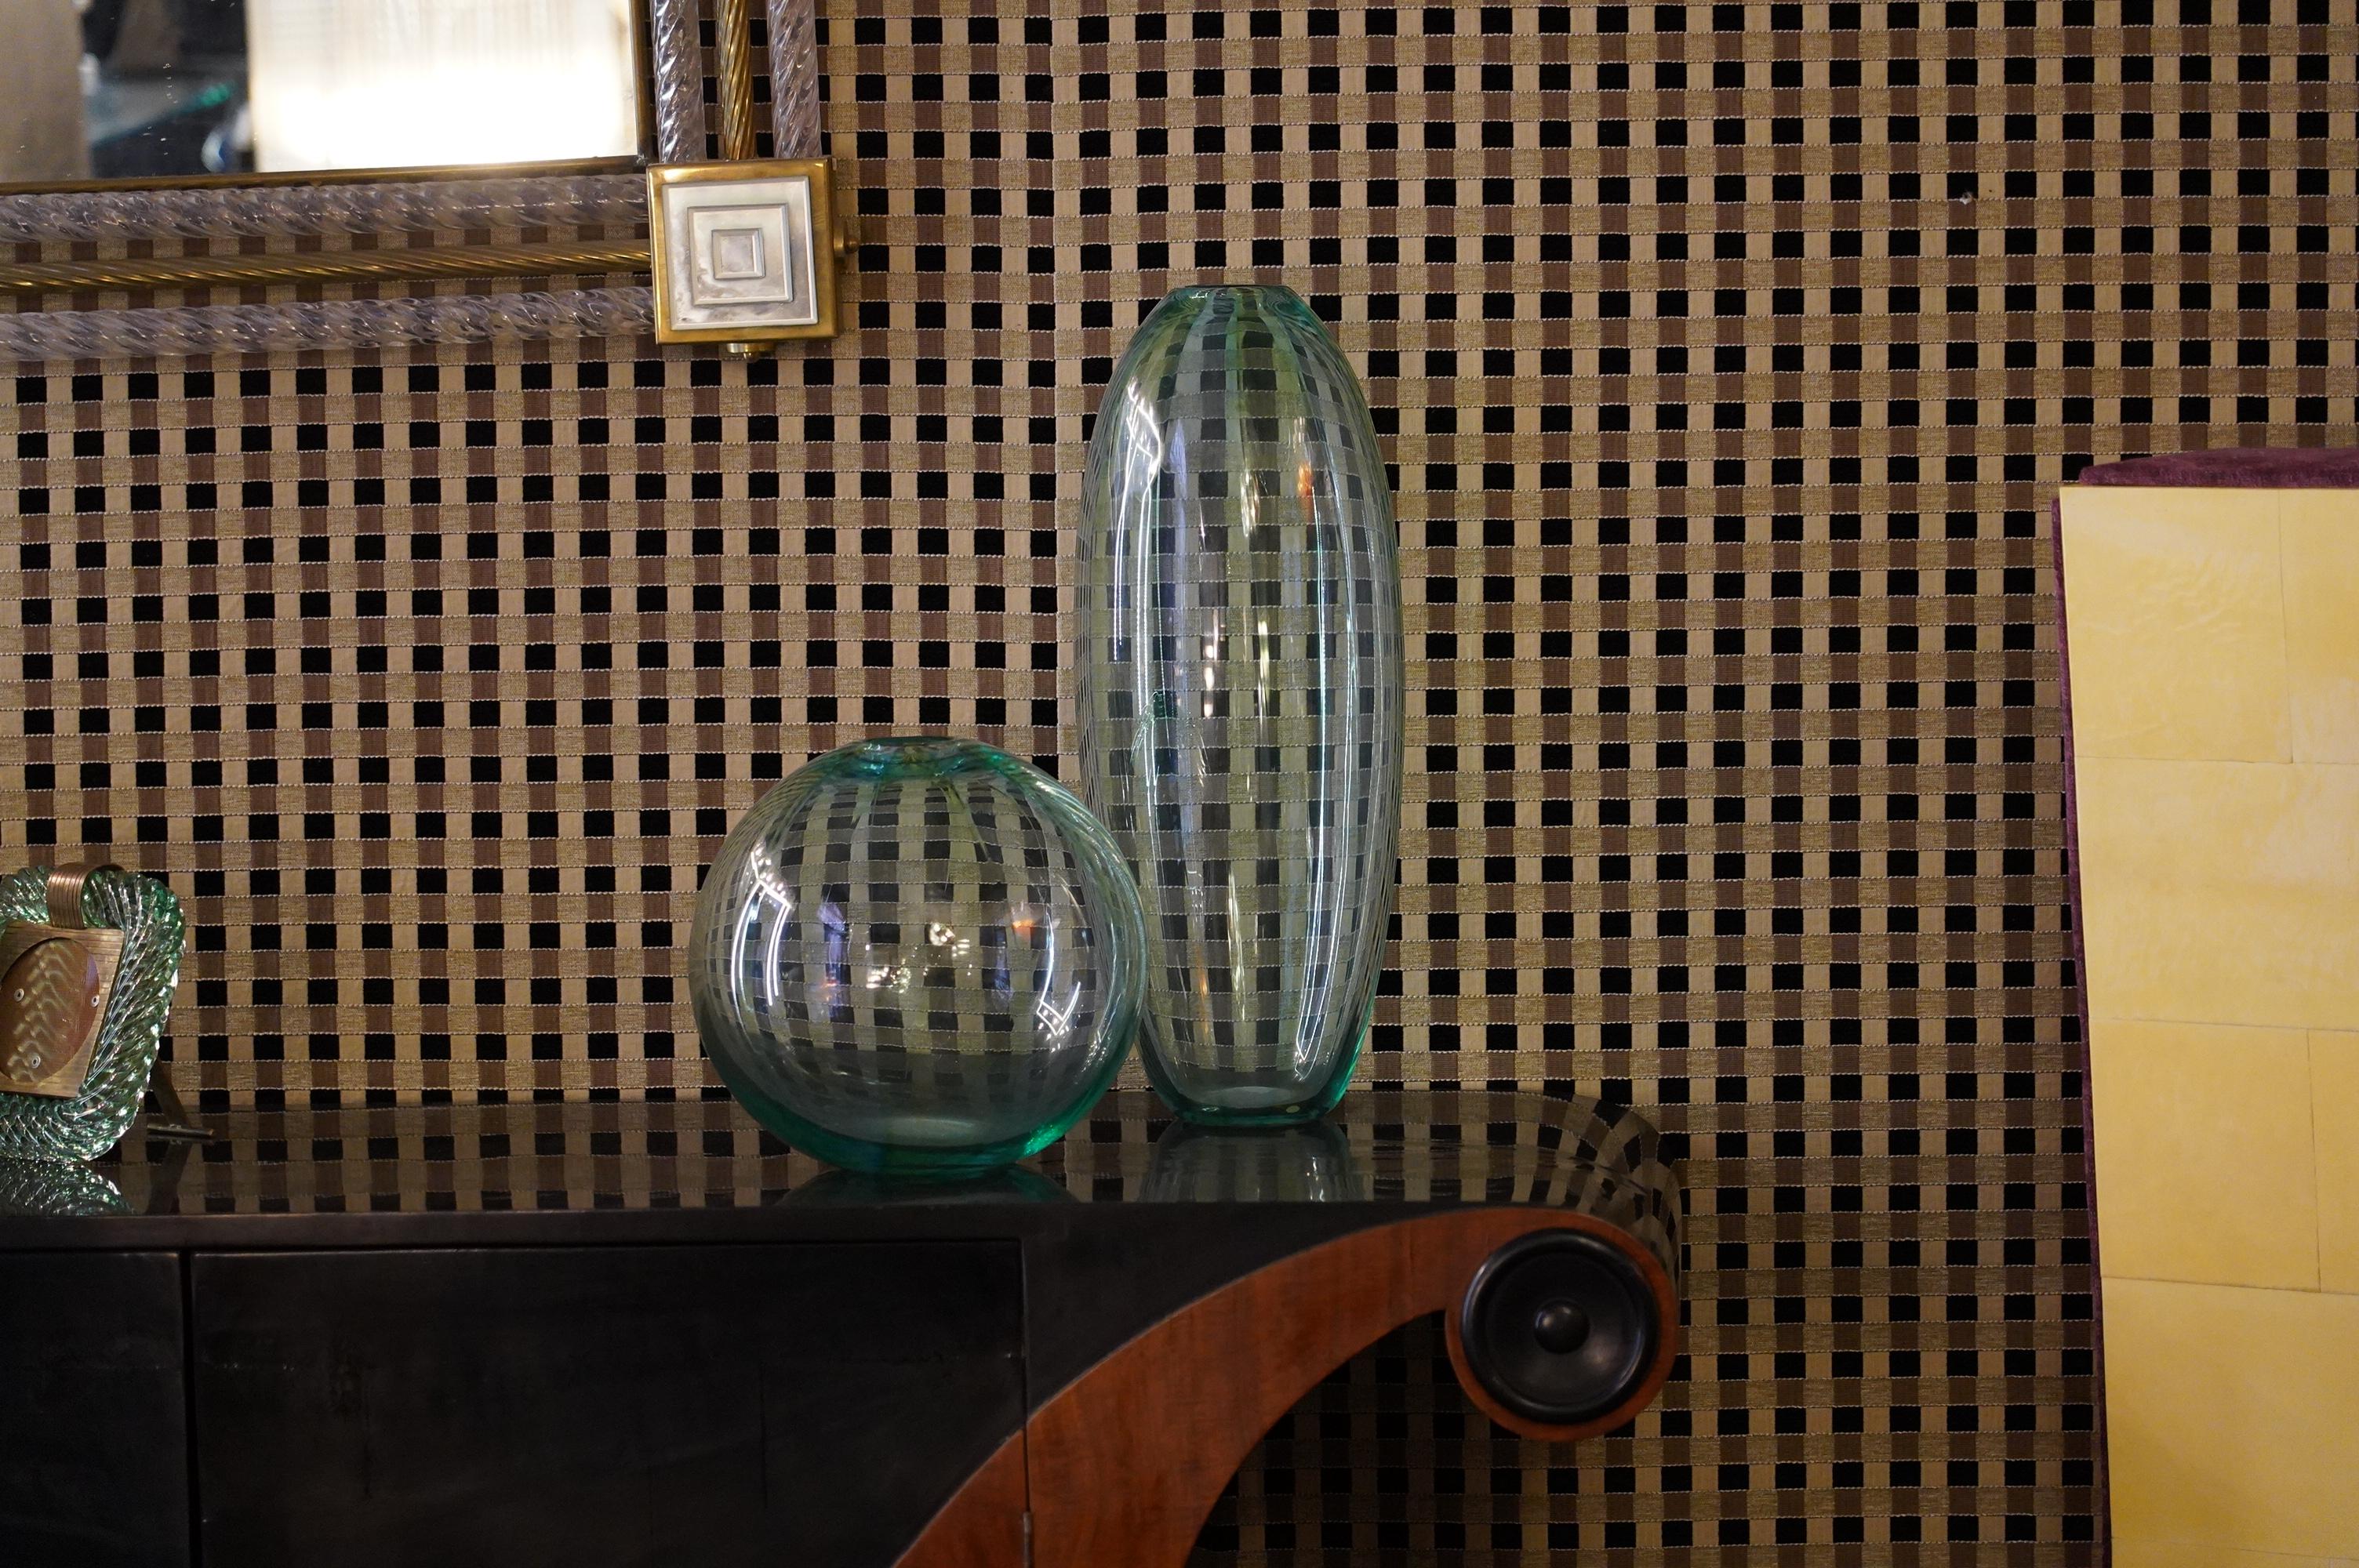 Formia Luxusglas sind gestanzt:: diese Paare von Murano-Vasen. 

Ein Paar Murano-Vasen mit unterschiedlichen Formen:: aber miteinander kombiniert. Die eine ist schmal und lang:: die andere ist kugelförmig. Ihre Farbe ist ein helles Grün und Blau::